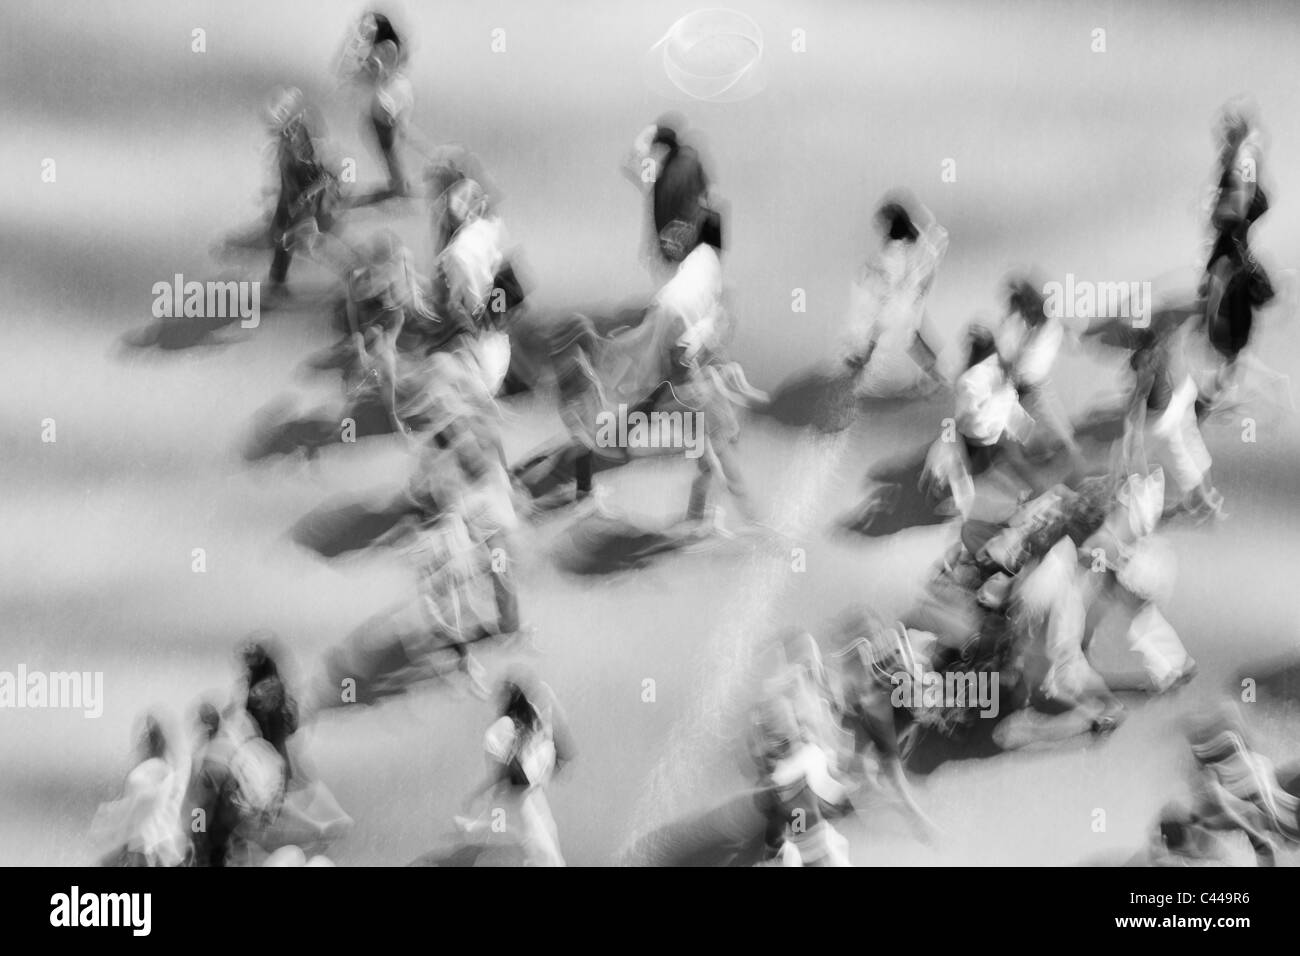 People walking in New York, defocused, blurred motion Stock Photo